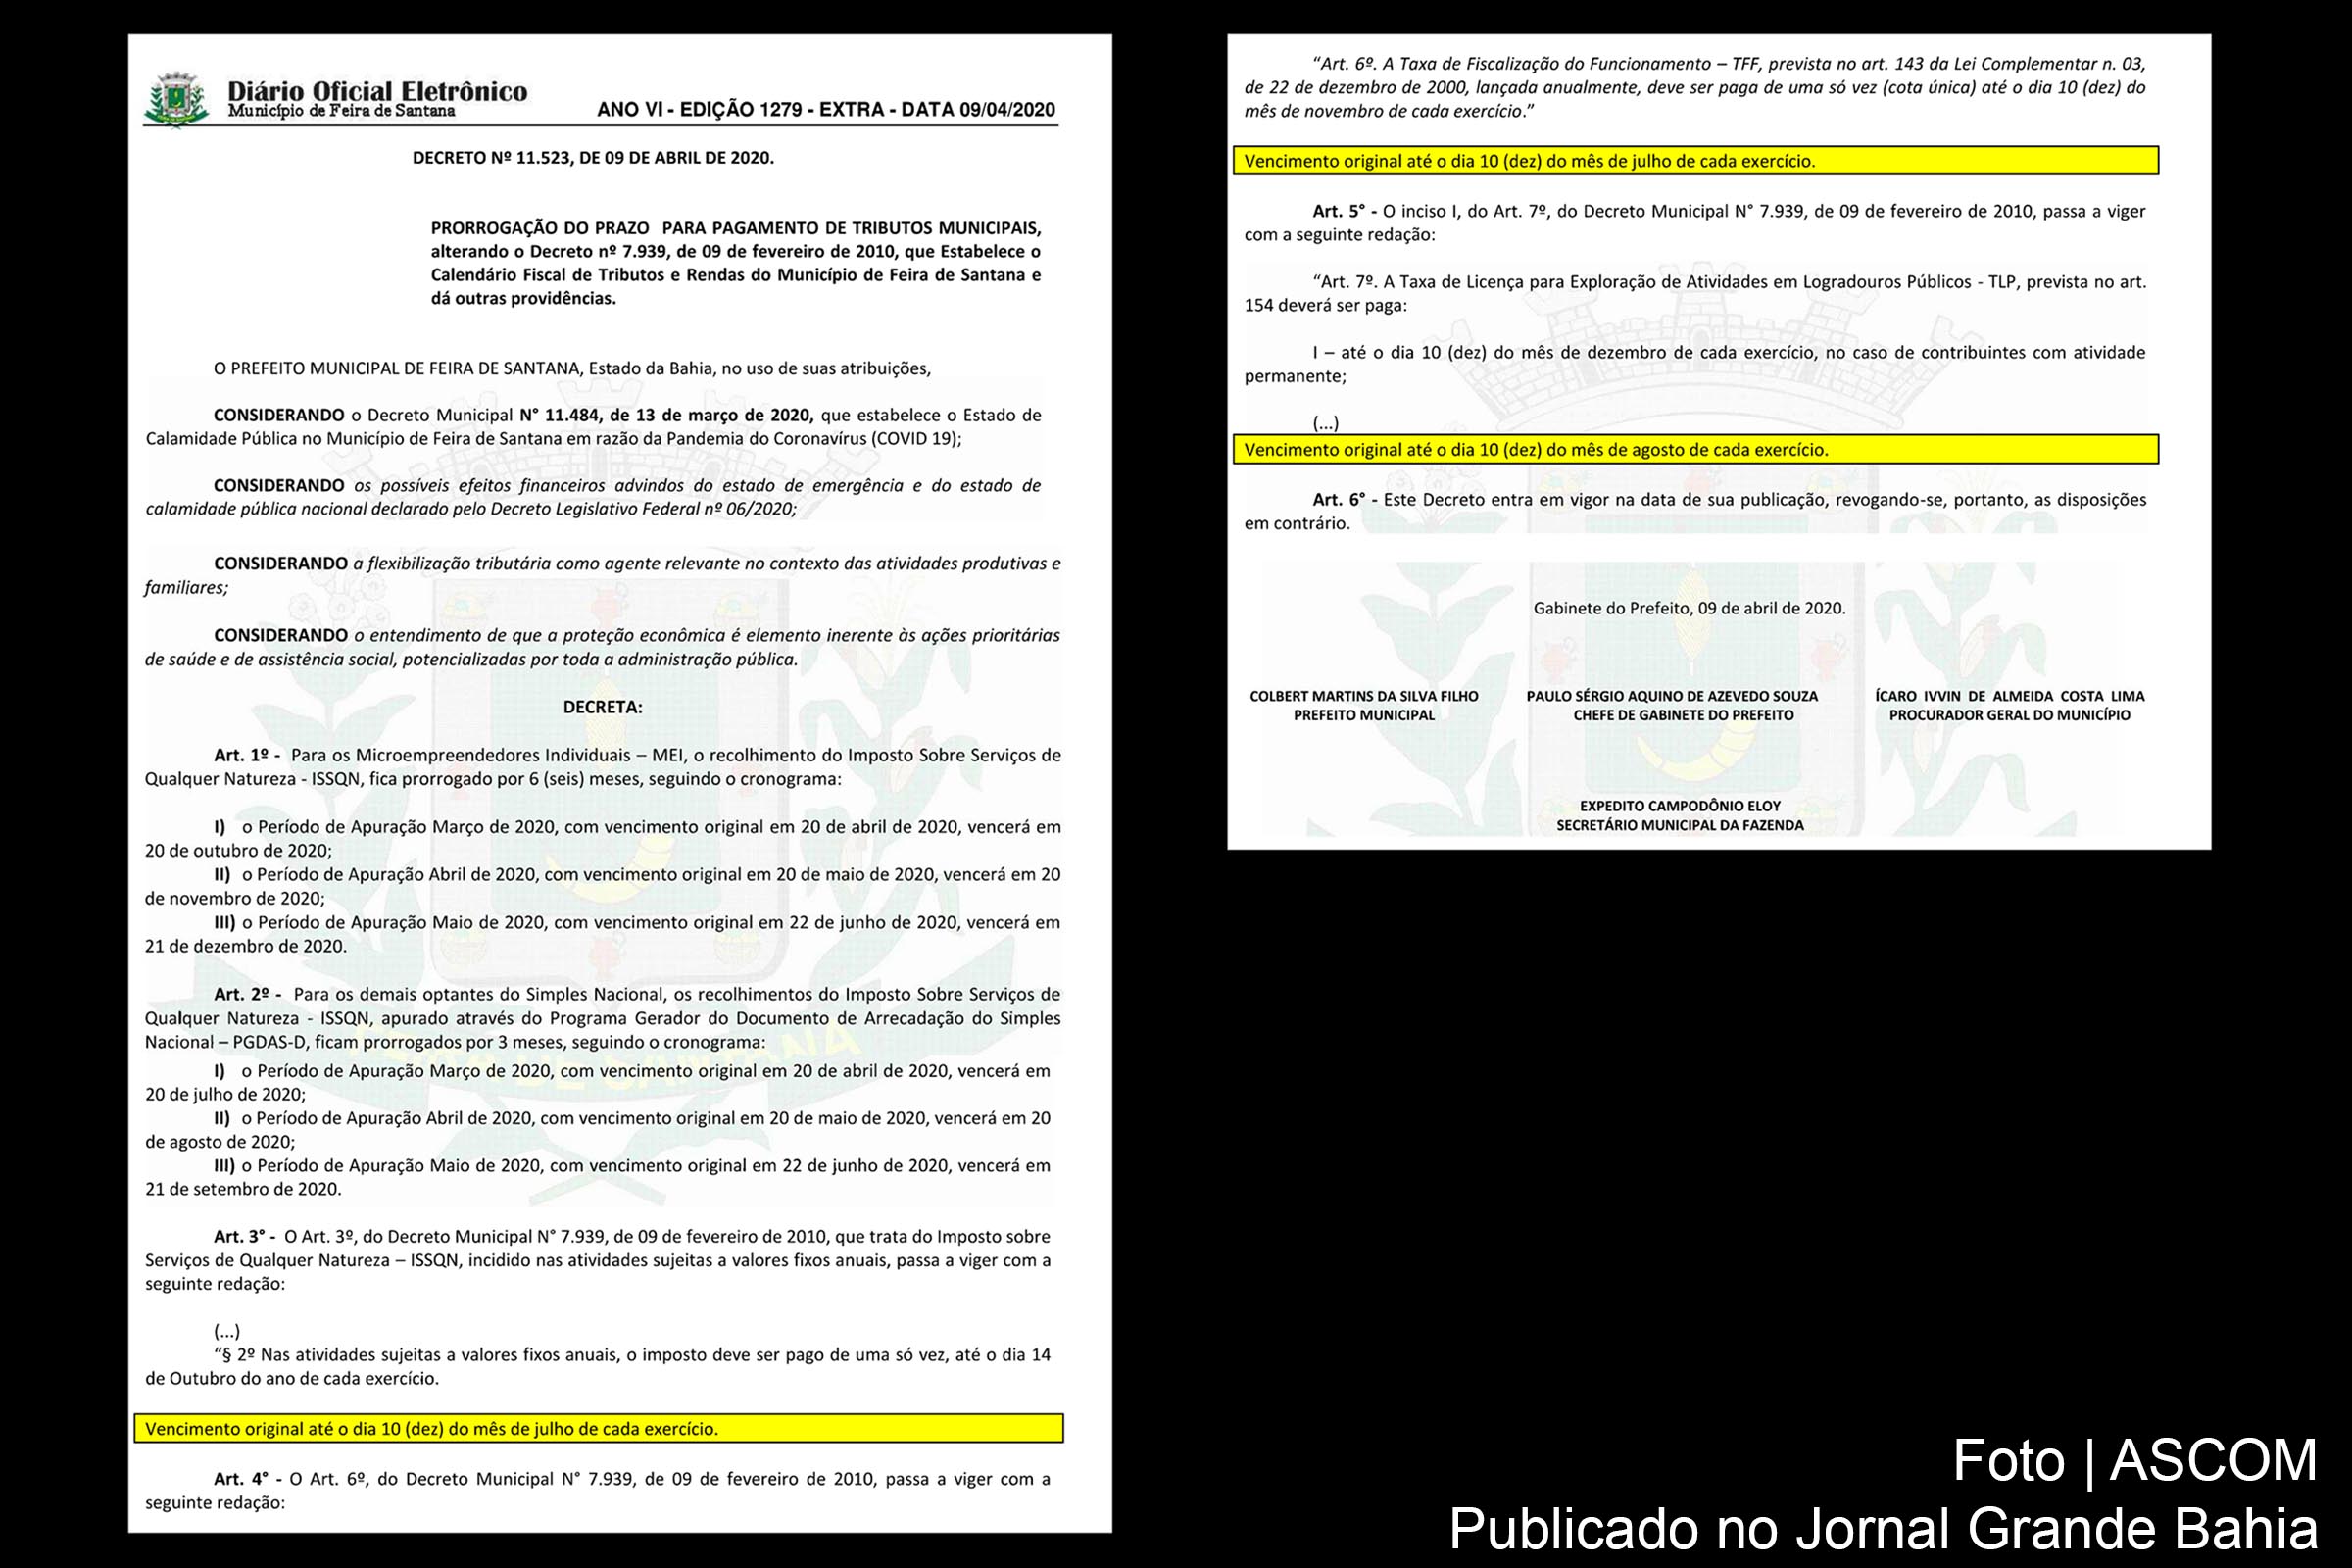 Decreto assinado pelo prefeito Colbert Martins prorroga pagamentos de tributos municipais de Feira de Santana, em decorrência da pandemia de Covid-19 e da crise econômica estabelecida.